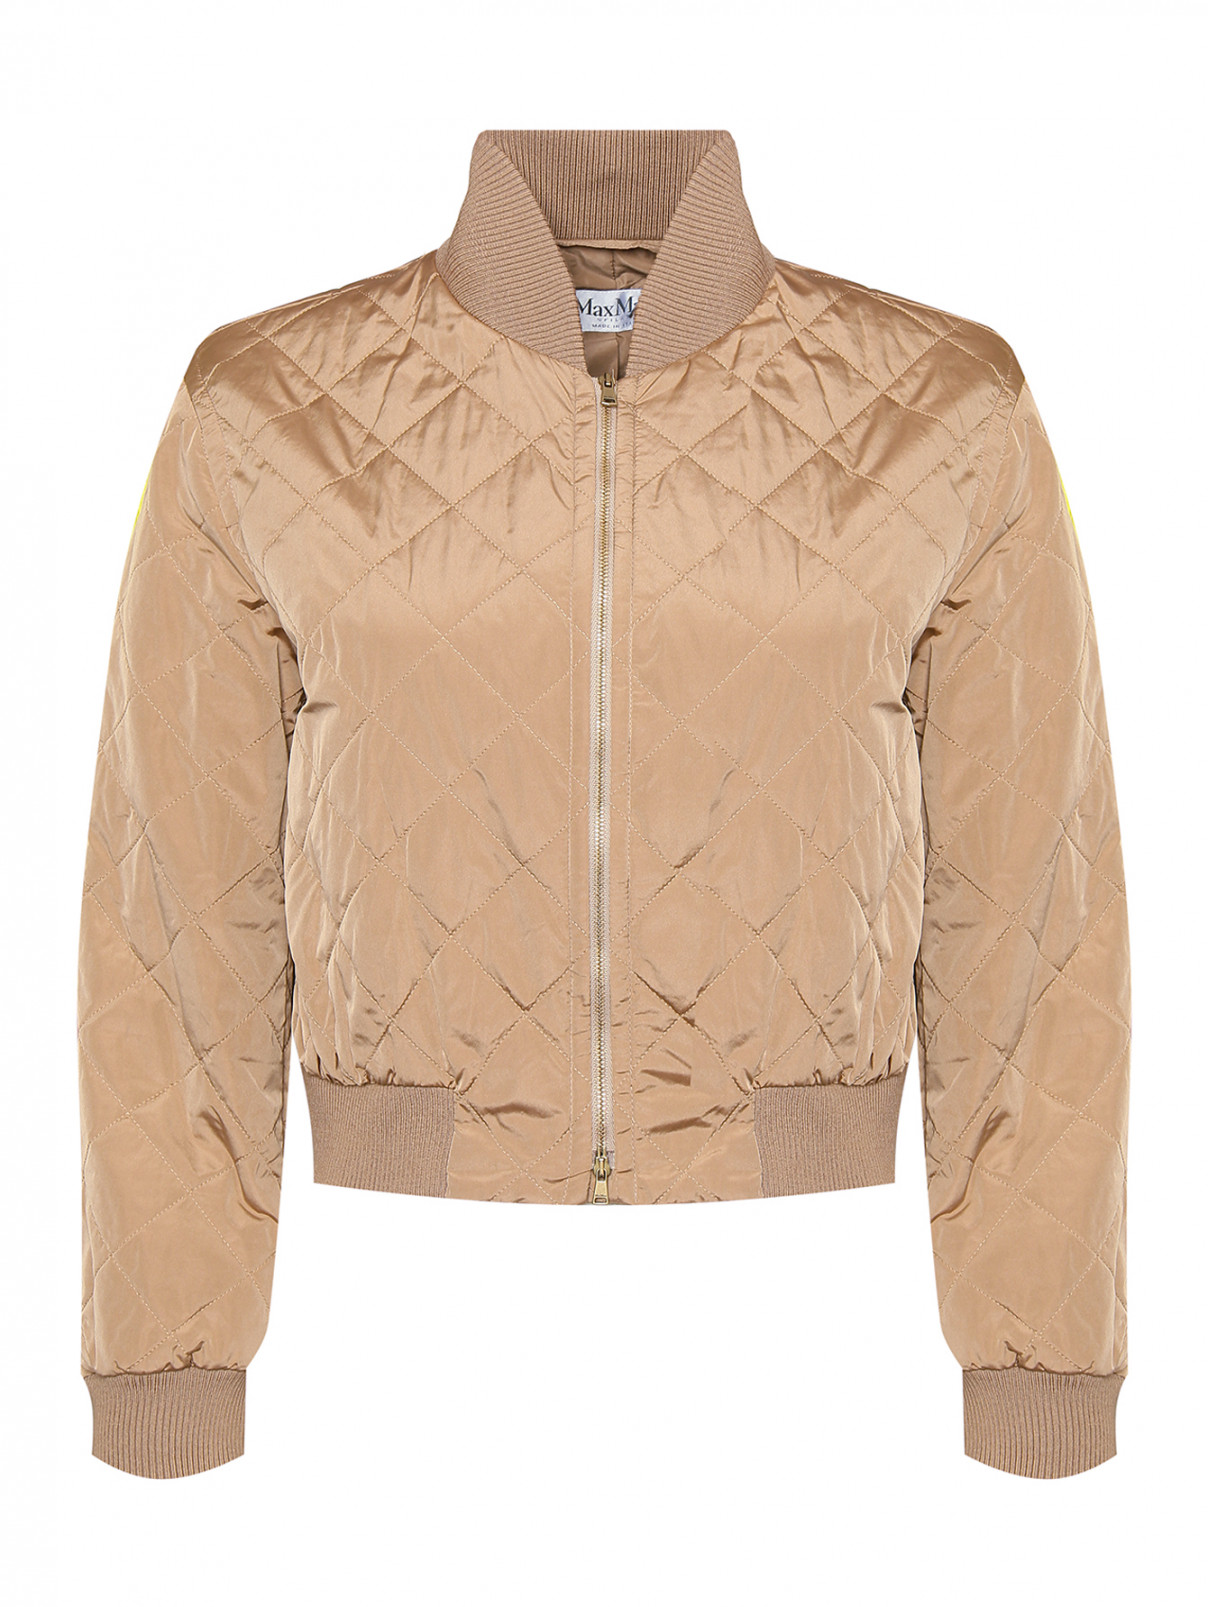 Укороченная стеганая куртка Max Mara  –  Общий вид  – Цвет:  Бежевый